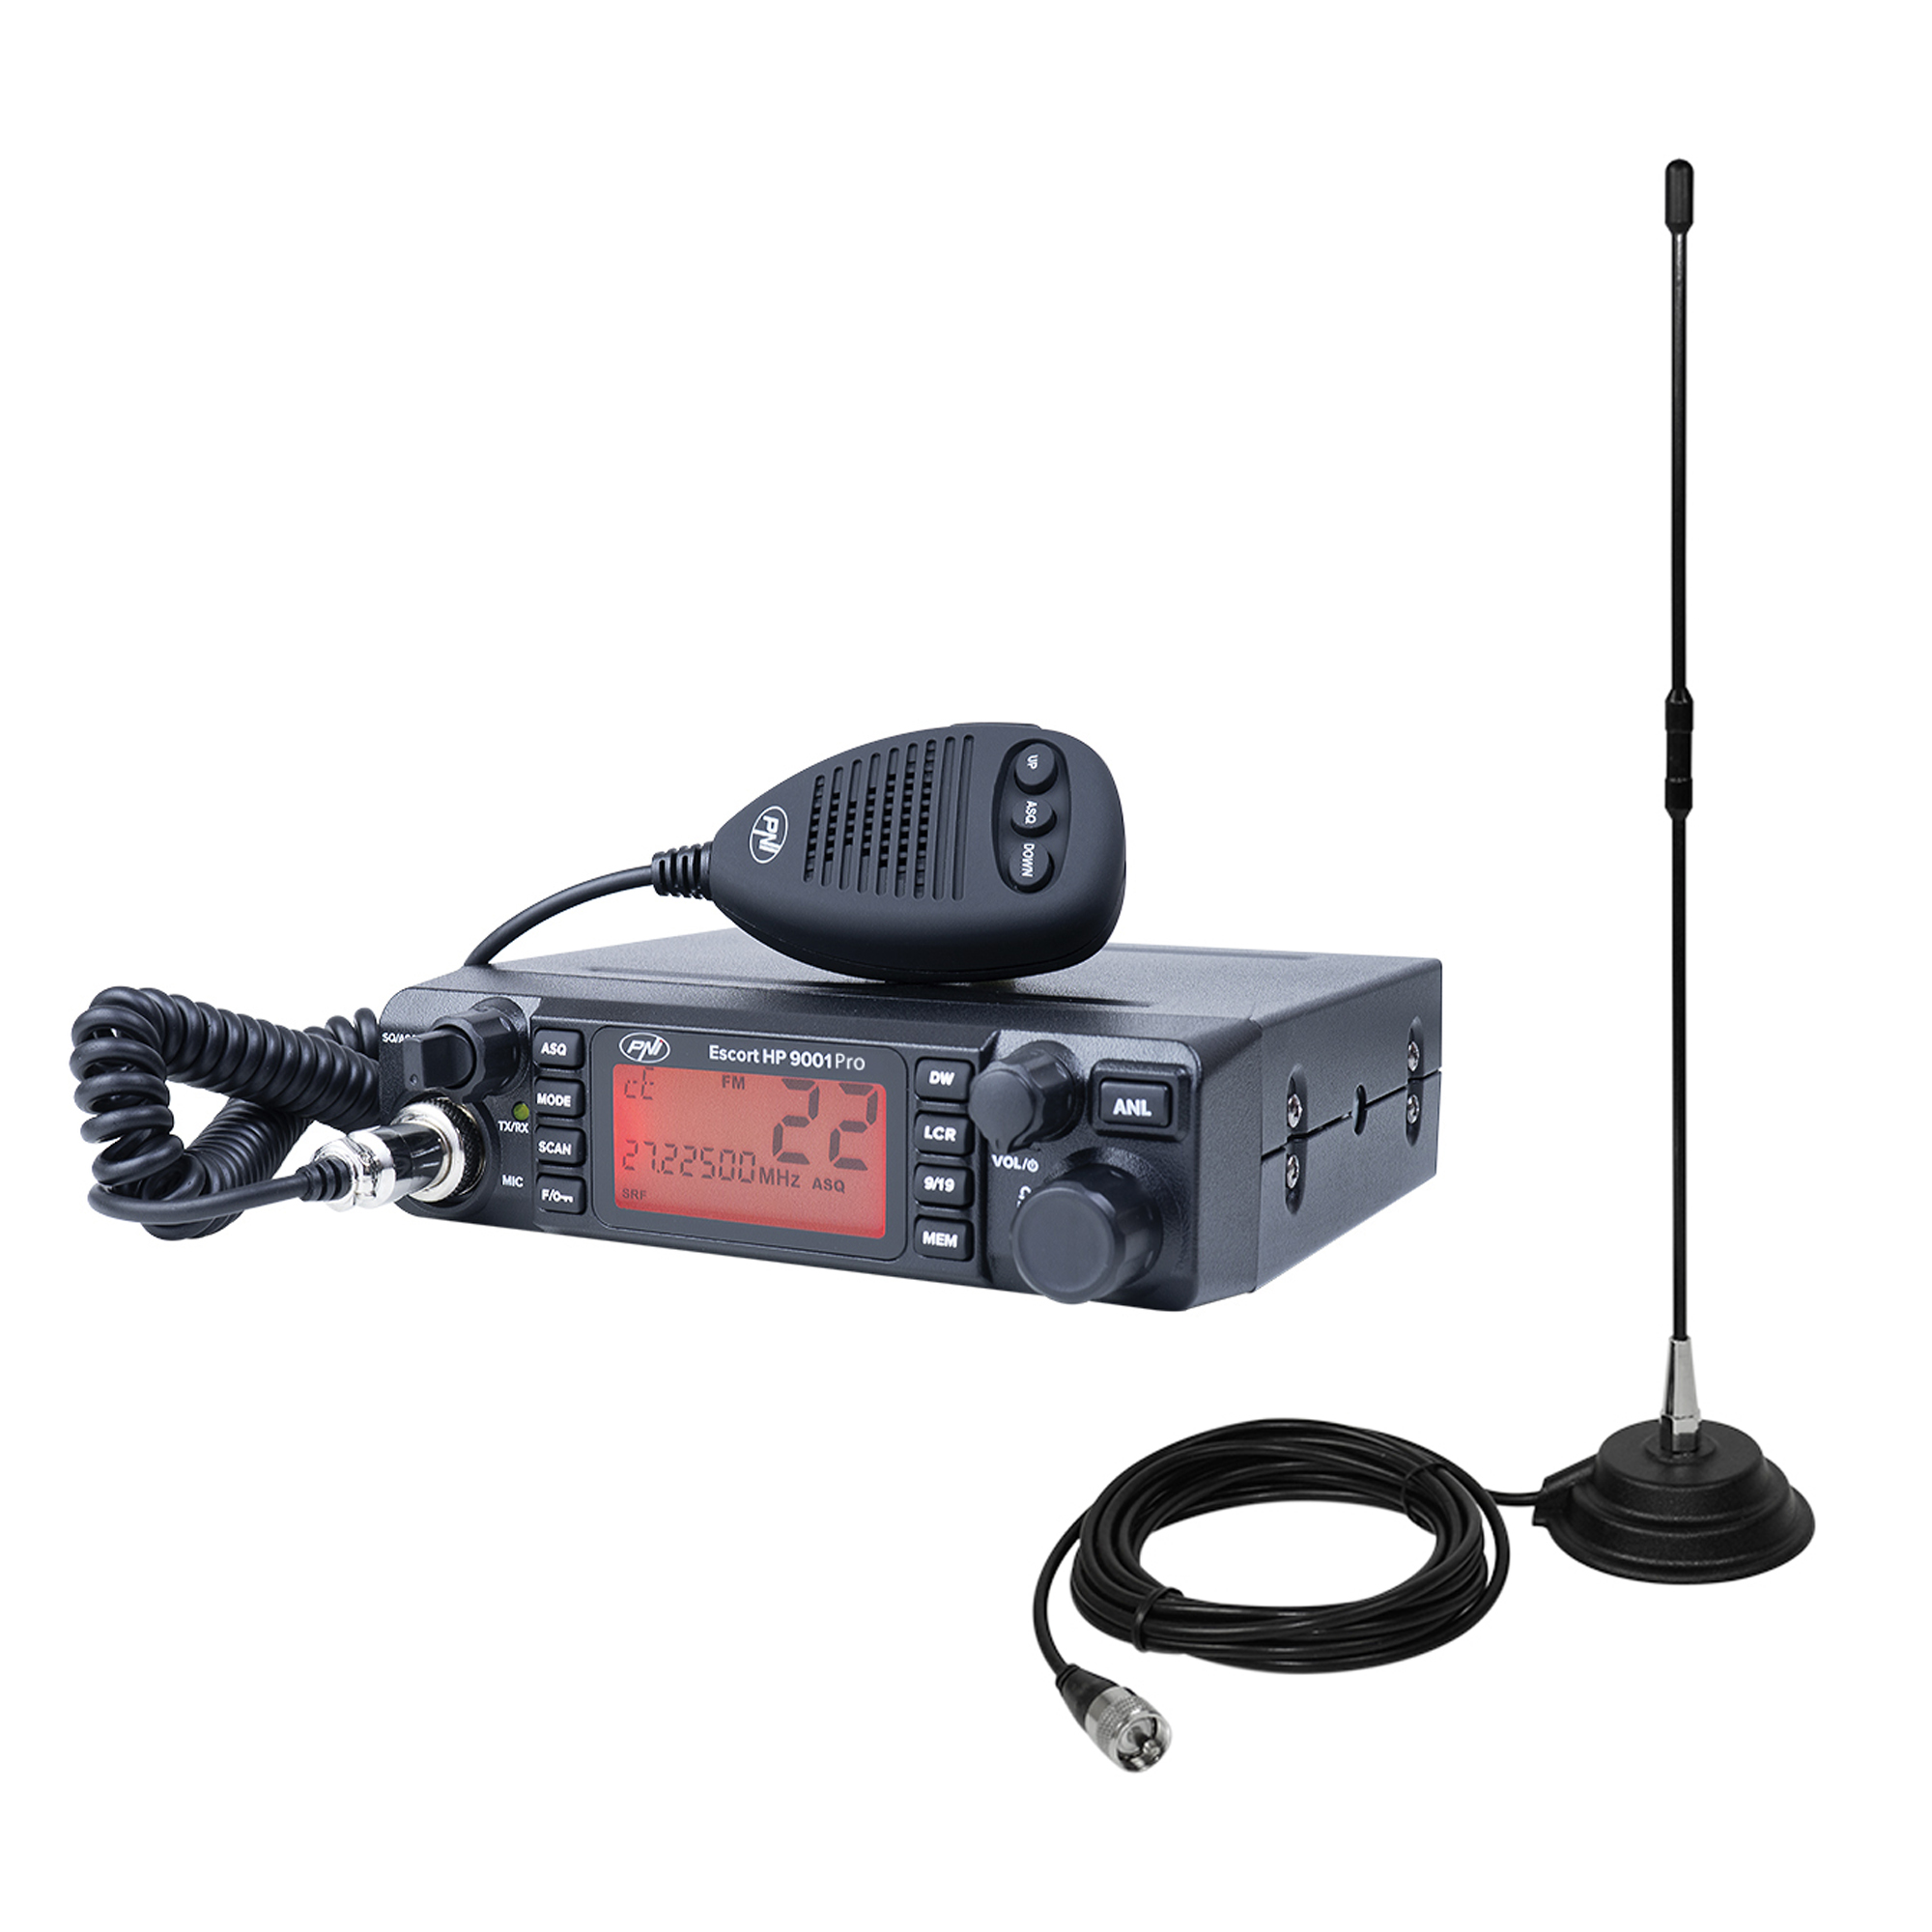 Pachet Statie radio CB PNI ESCORT HP 9001 PRO ASQ reglabil, AM-FM, 12V/24V, 4W + Antena CB PNI Extra 40 cu magnet, 30W, 26-30MHz, SWR 1.0, fibra de sticla